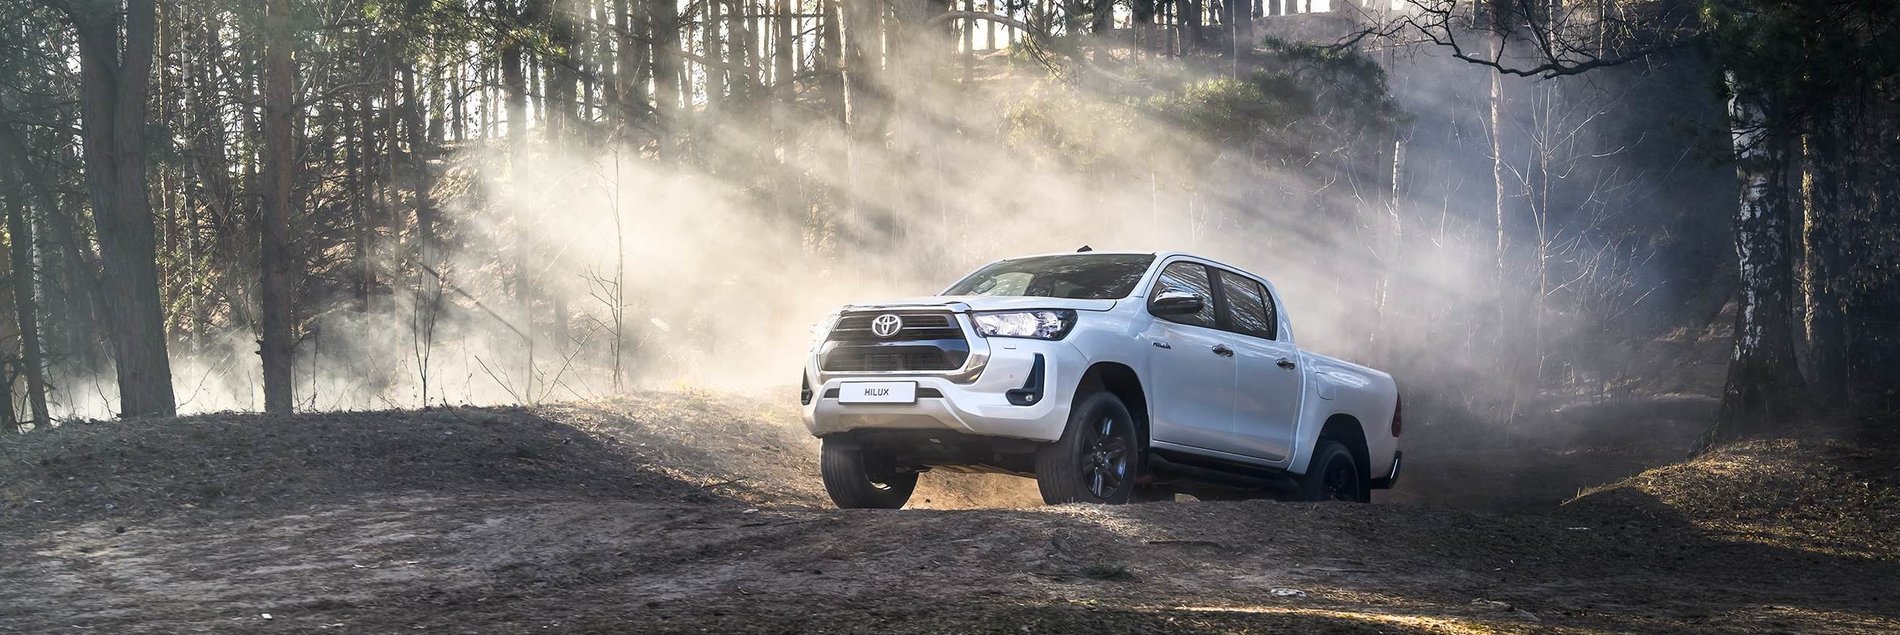 Toyota Hilux получил новую специальную серию Exclusive